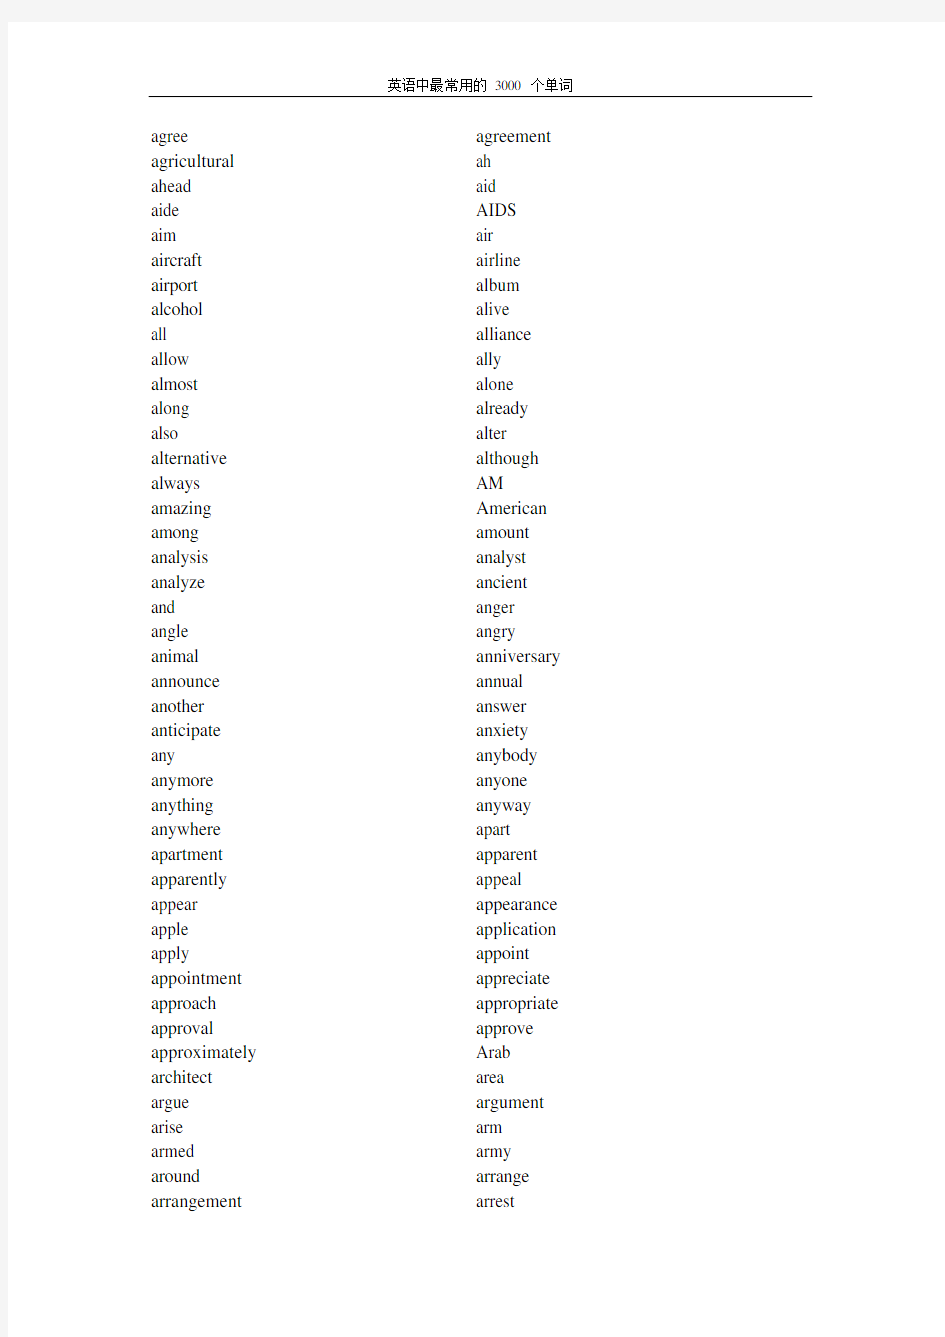 英语中最常用的 3000 个单词